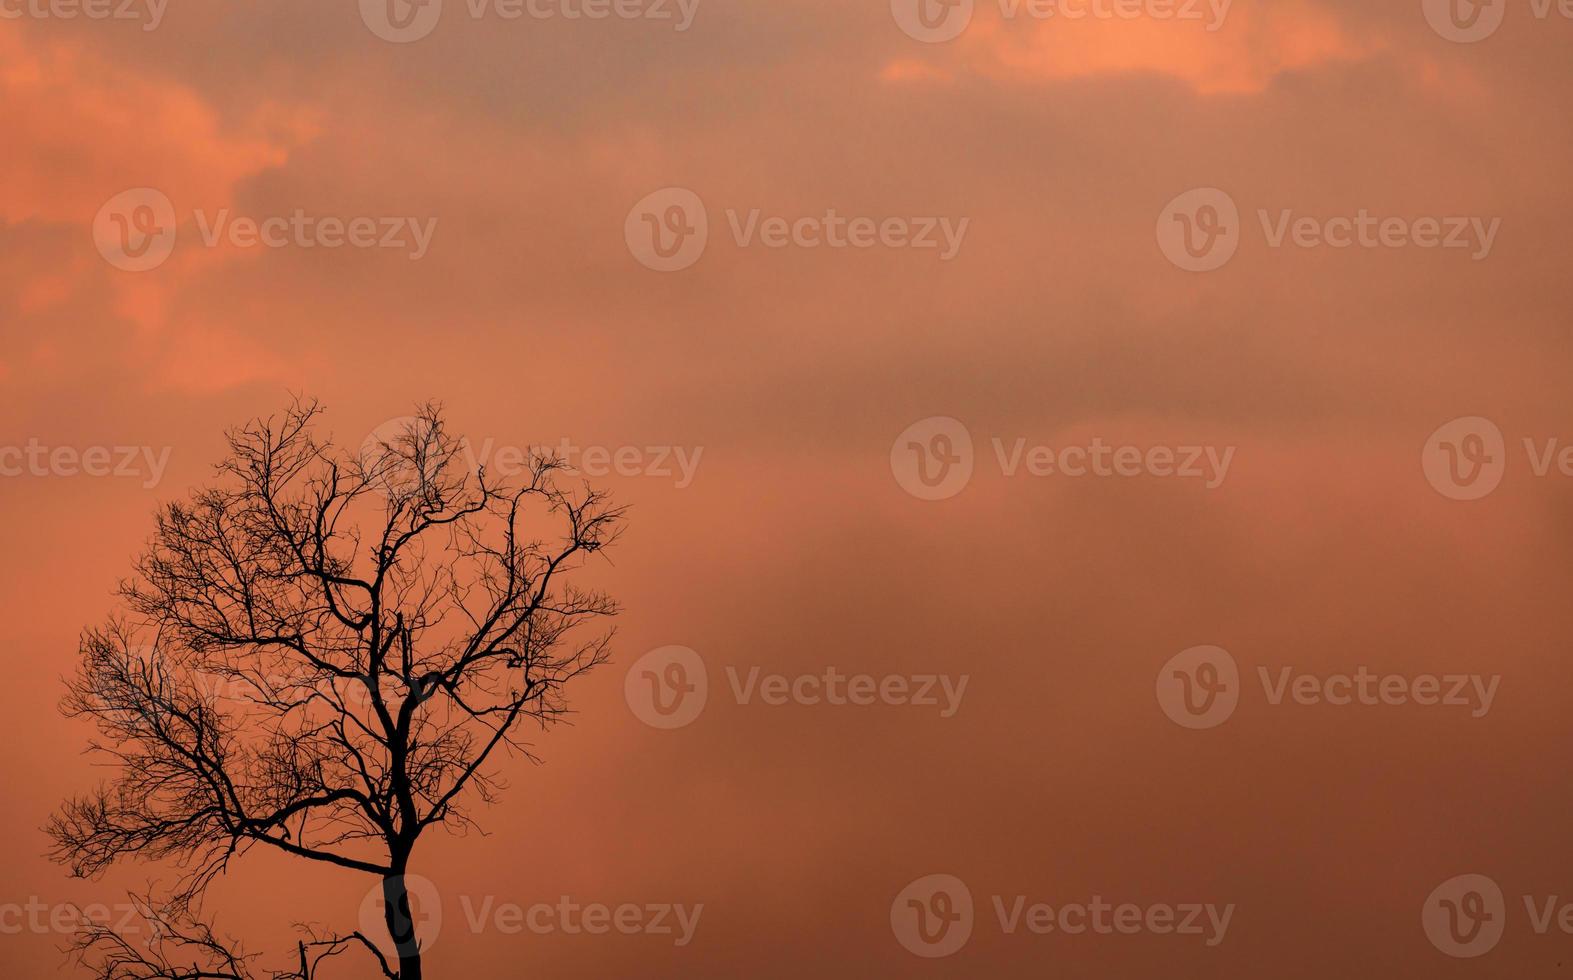 silhouette albero morto sul tramonto arancione cielo e nuvole. sfondo triste, morte e dolore. paesaggio naturale. bellezza nella natura. albero senza foglie con copia spazio per ispirazione o citazione sfondo astratto. foto